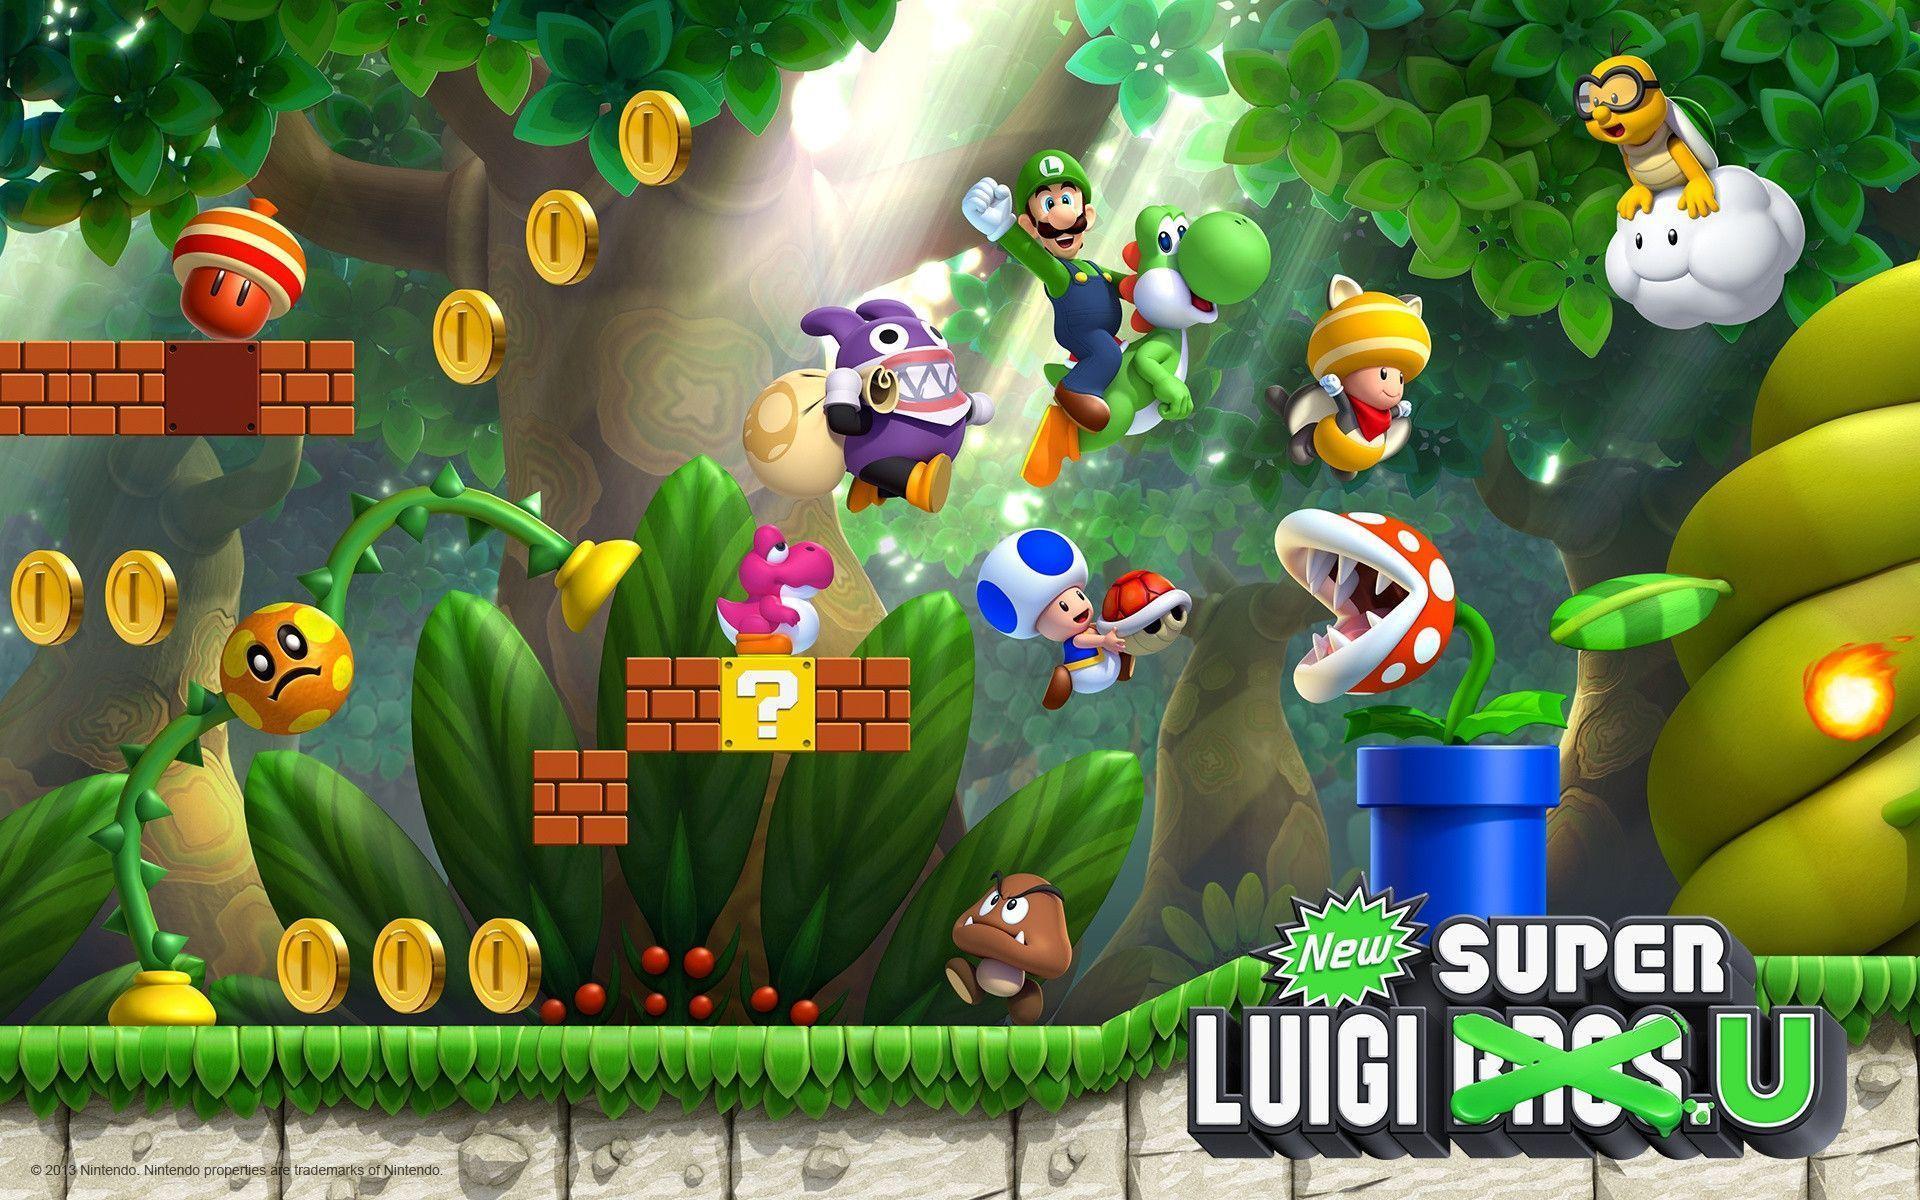 Super Mario And Luigi 3D Game Wallpaper. Foolhardi